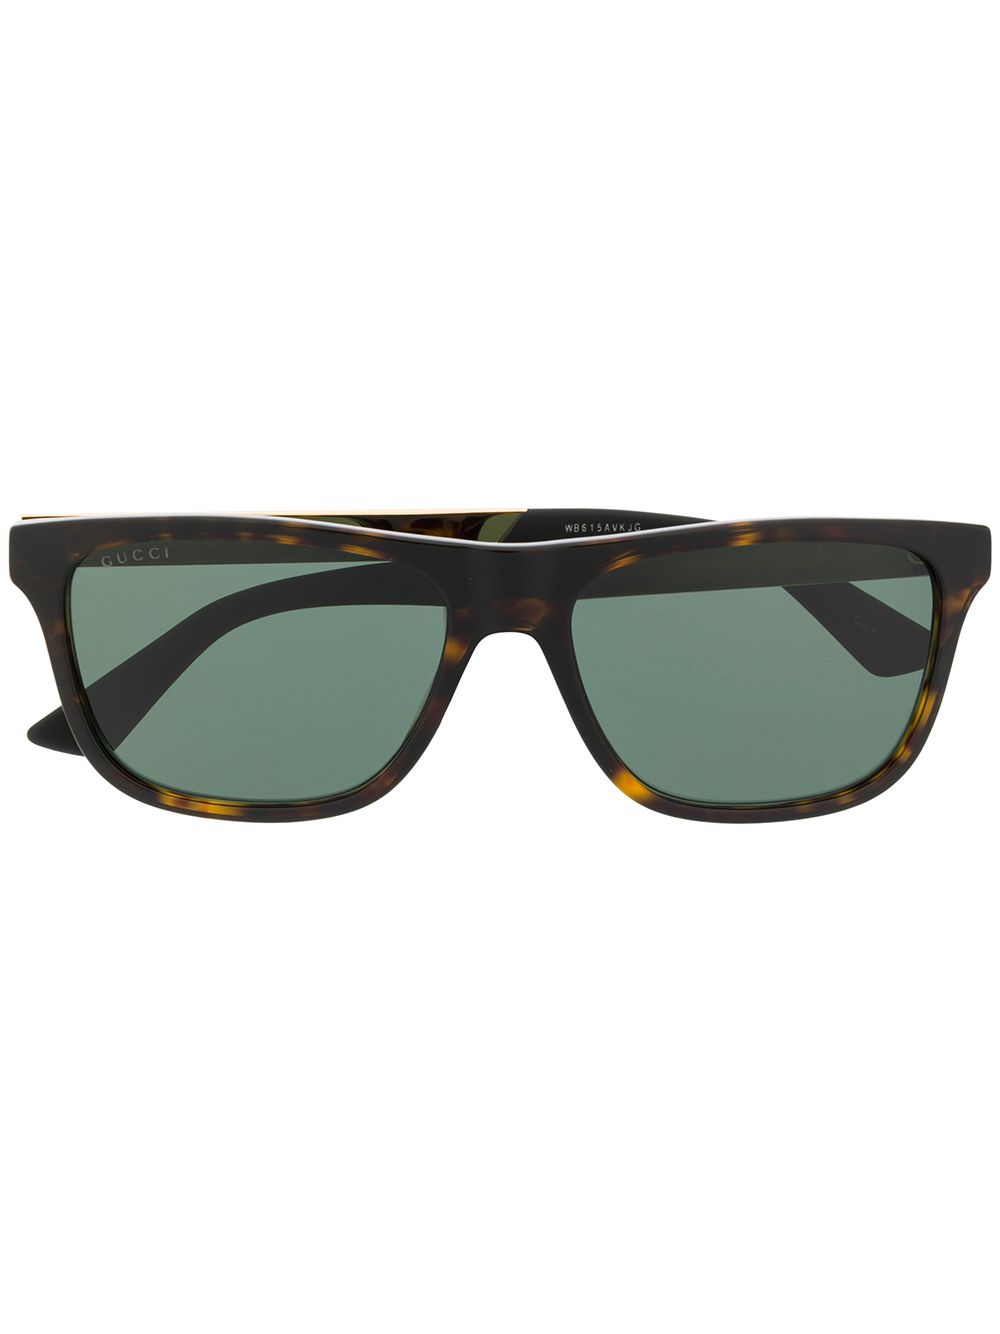 Gucci Eyewear Sonnenbrille mit eckigem Gestell - Grün von Gucci Eyewear